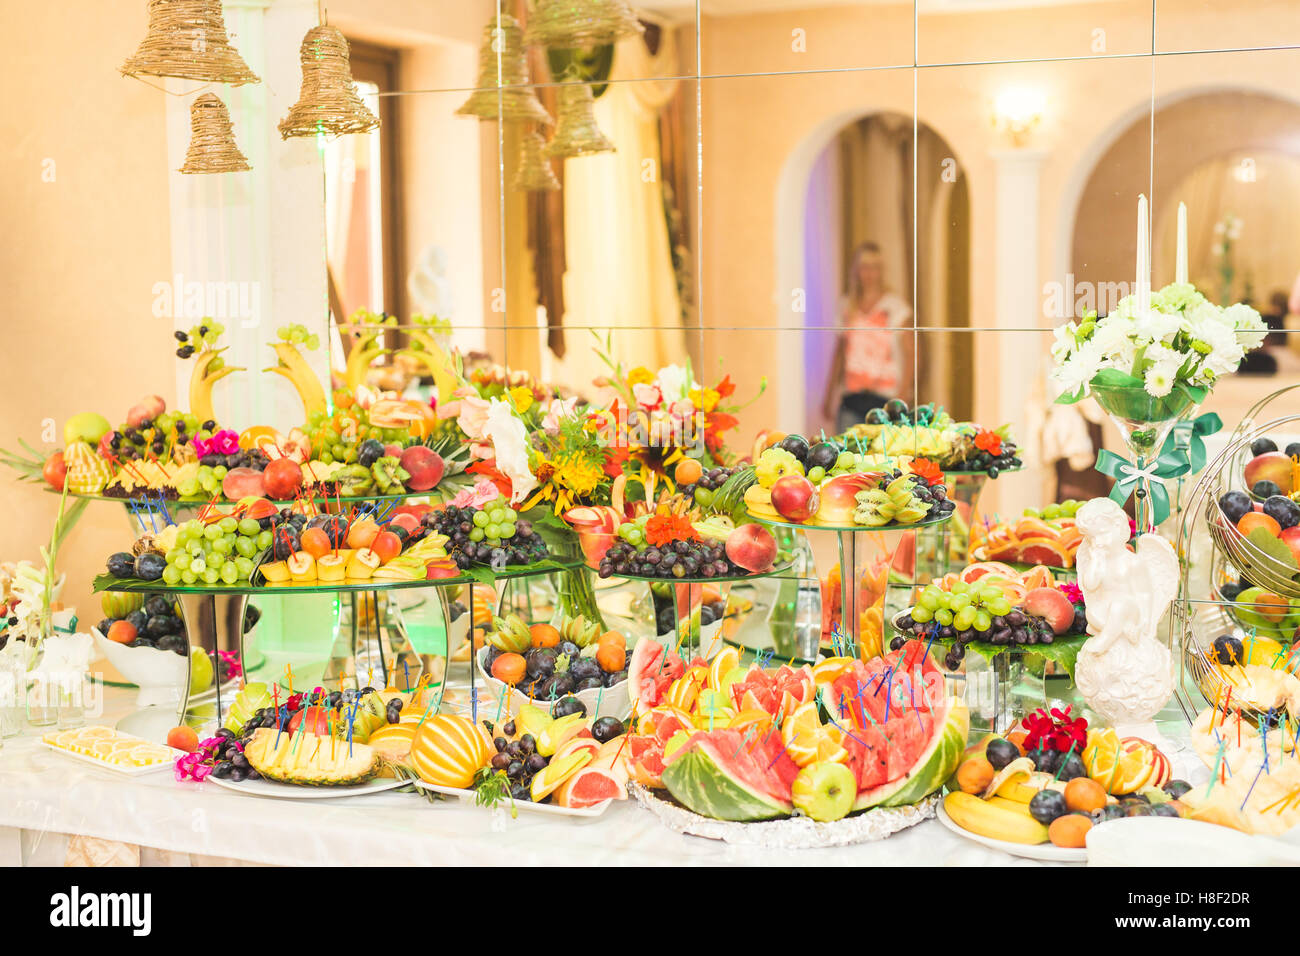 Buffet authentique, assortiment de fruits frais, de baies et d'agrumes. Préparation pour un menu créatif du design Banque D'Images